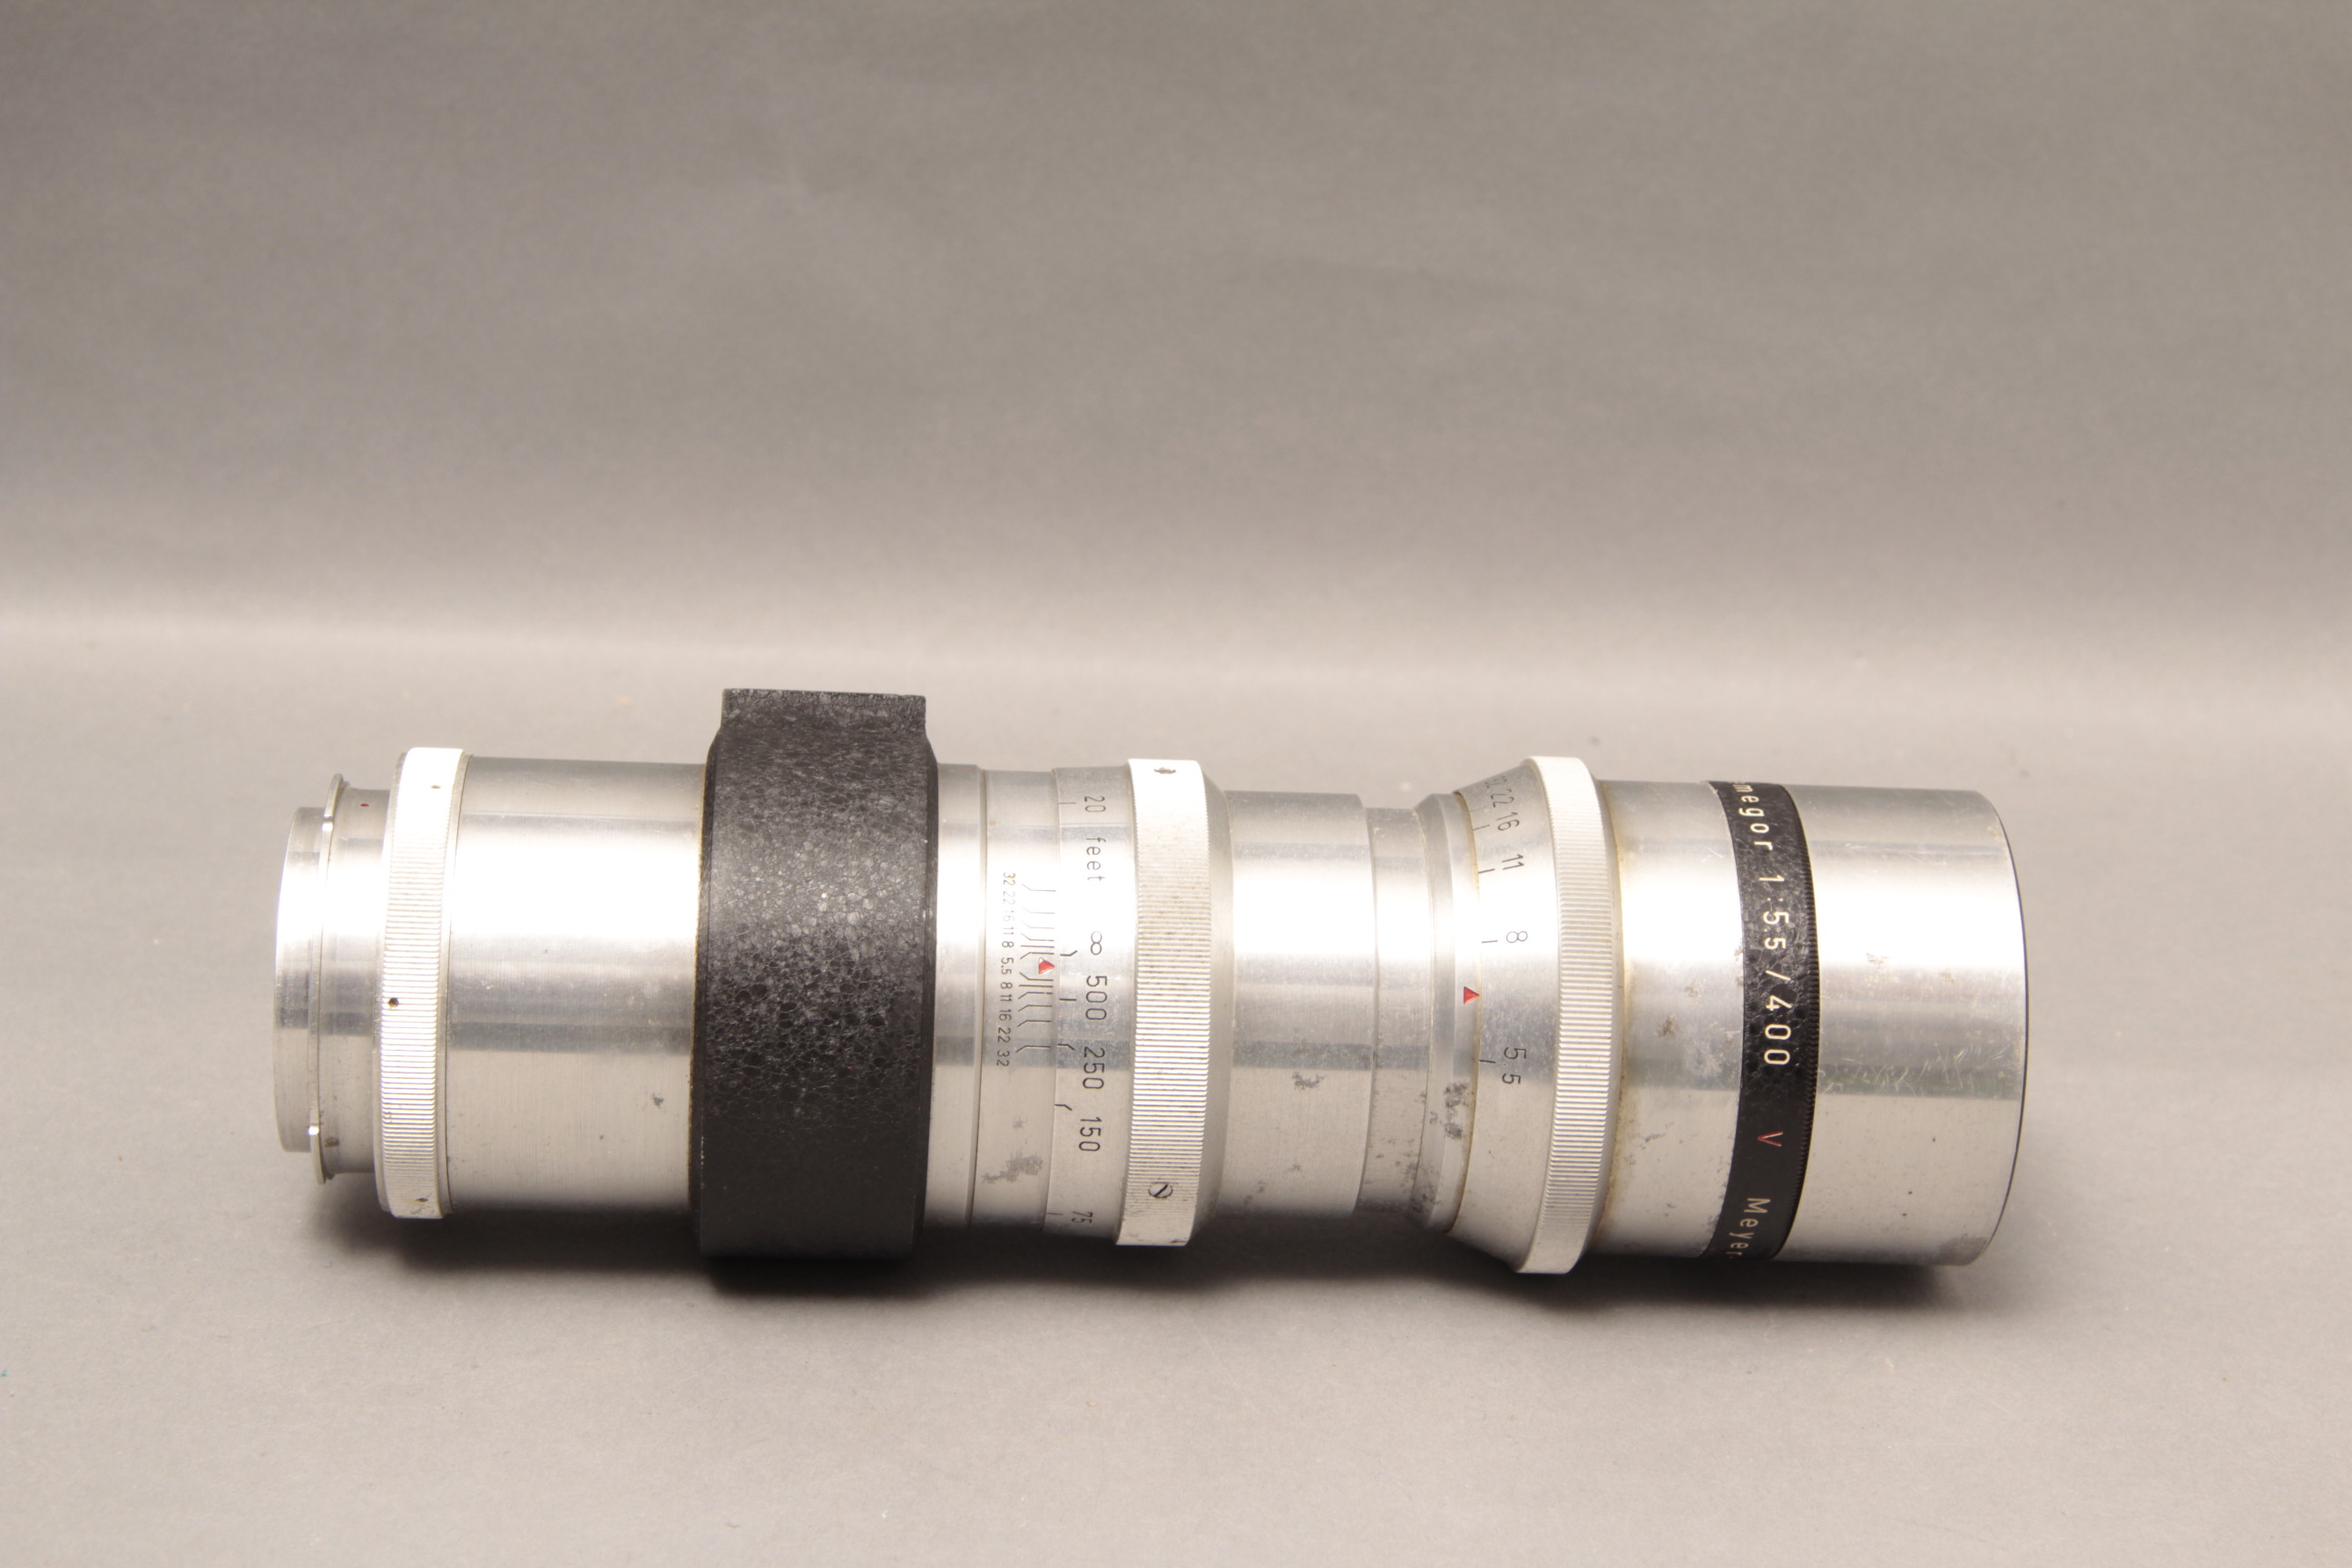 Meyer Tele-Megor Lens, f/5.5 400mm with a label indicating 'for post war Exakta 66'